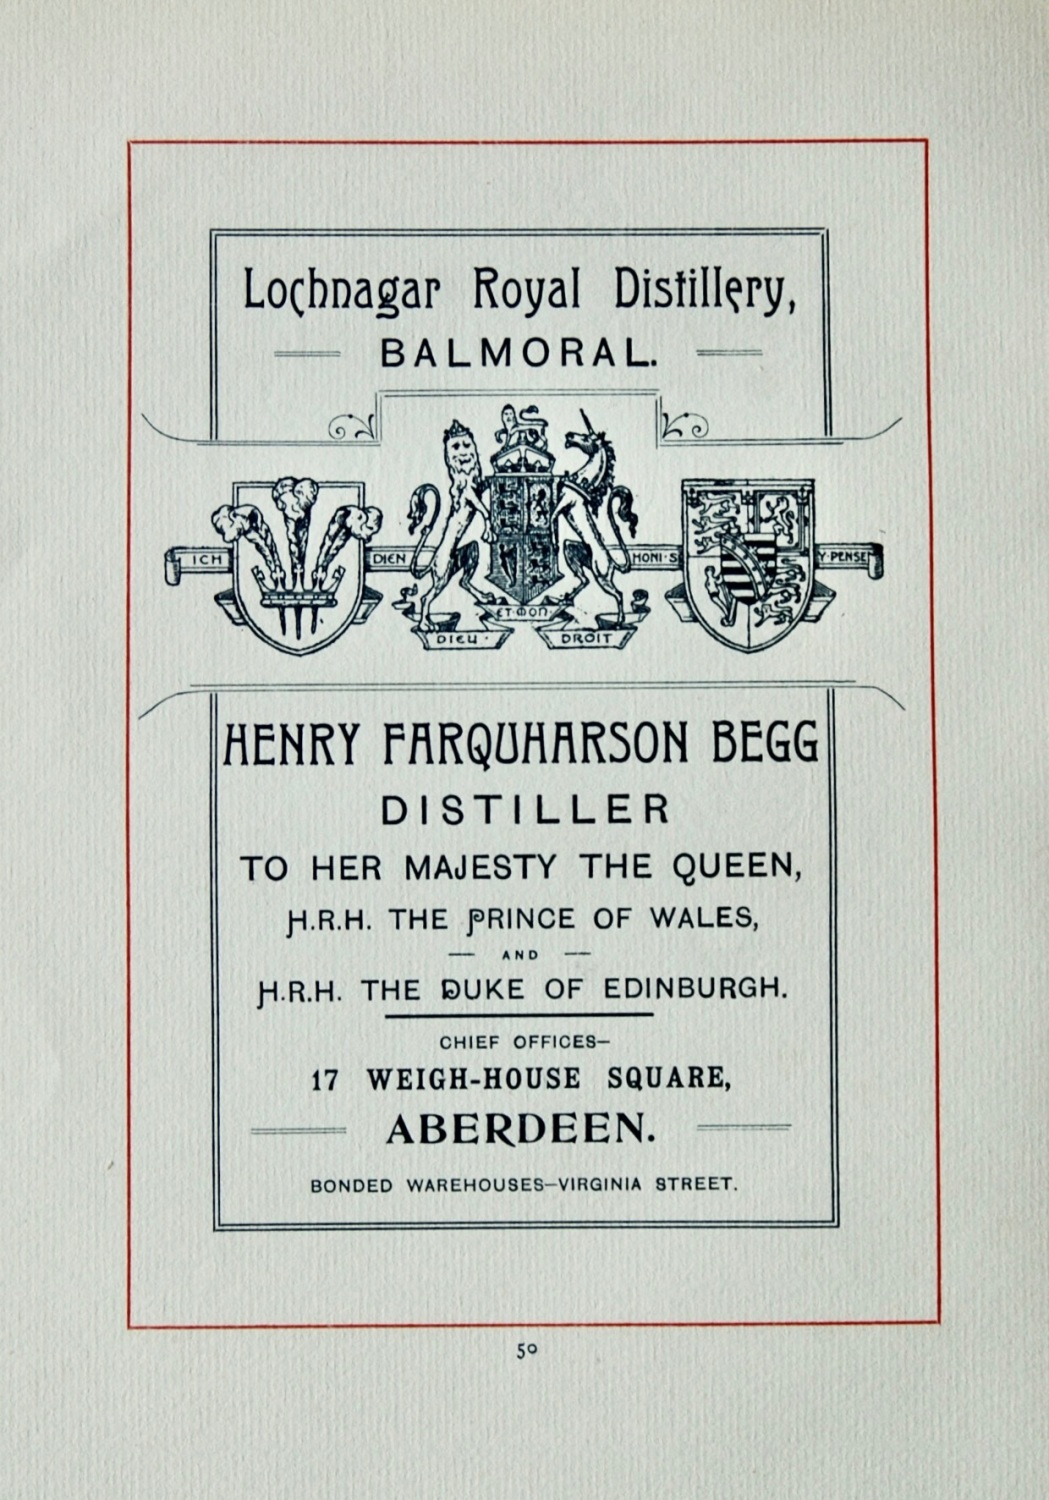 Henry Farquharson Begg, Distiller. (Lochnagar Royal Distillery,)  Balmoral.